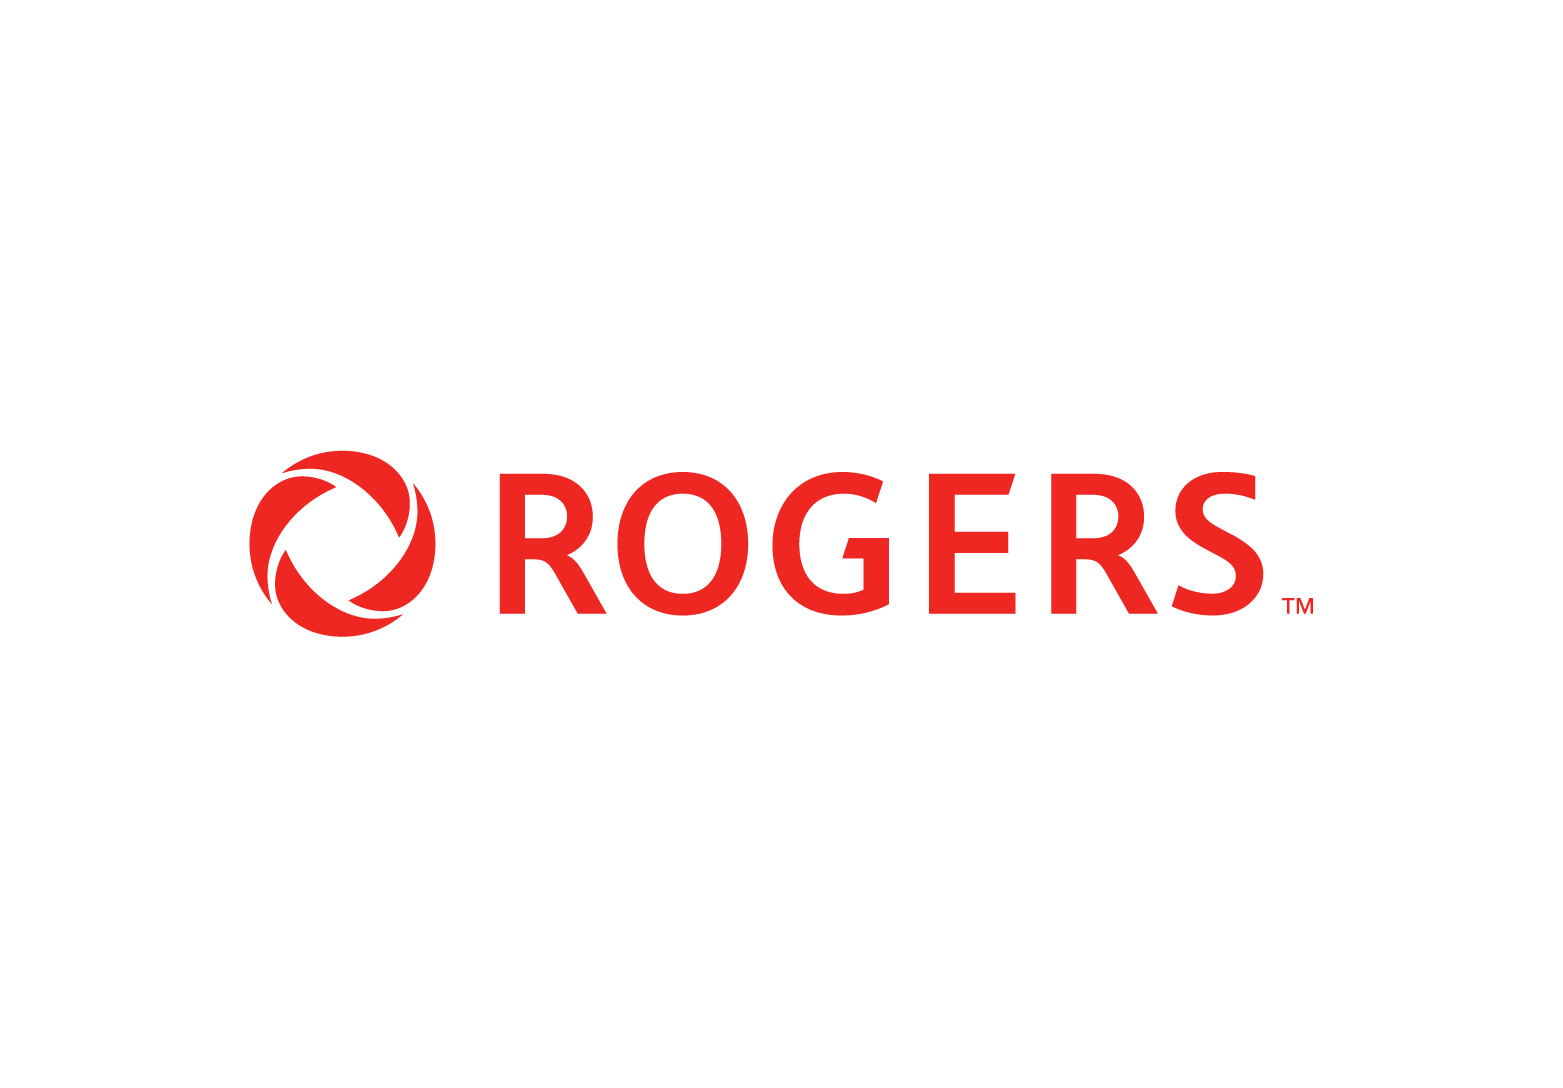 Rogers Wireless